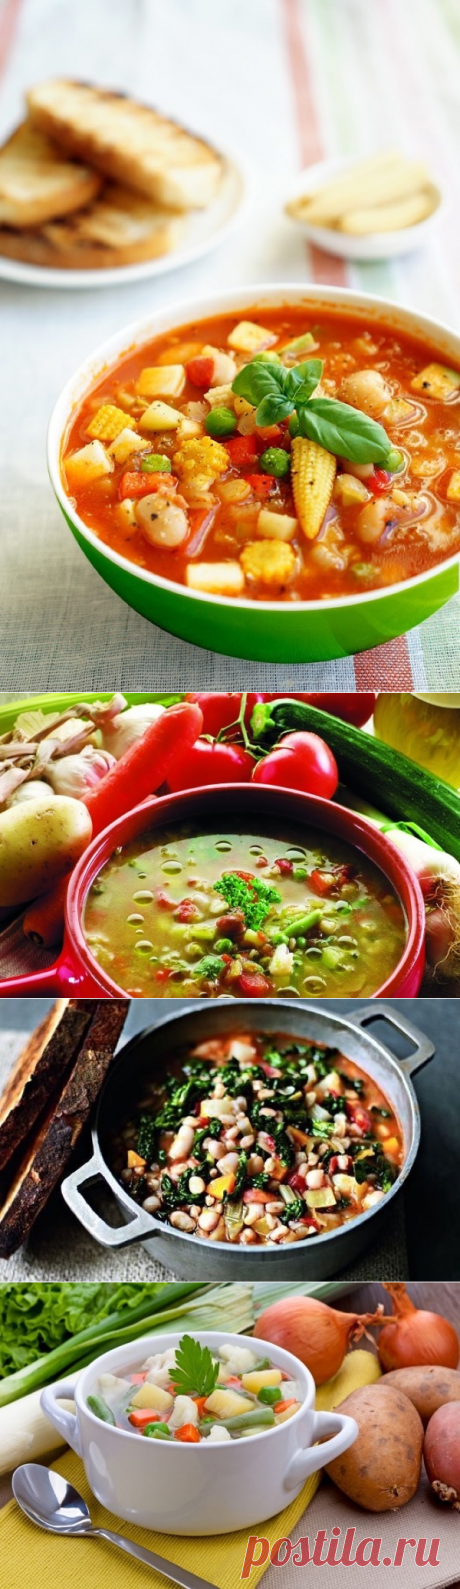 Минестроне: 5 рецептов супа от лучших поваров с фото и видео